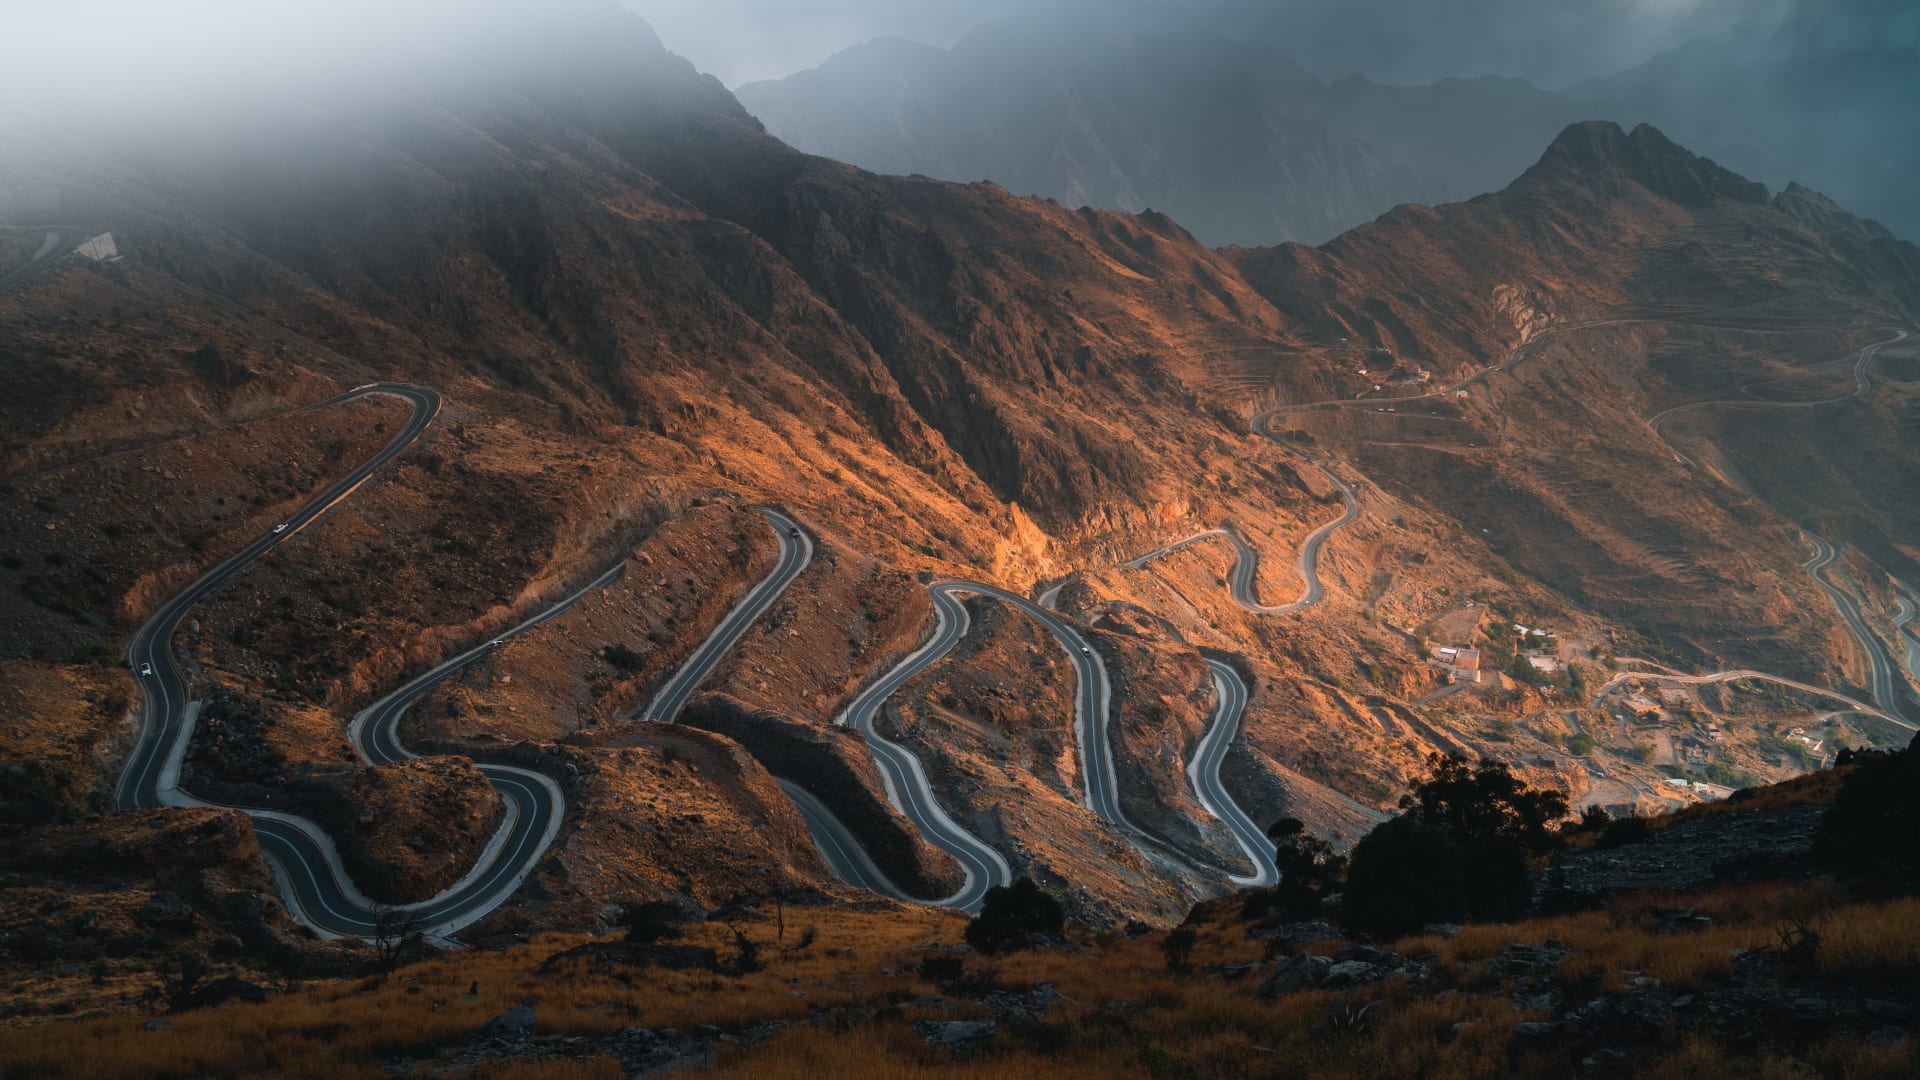 المصور فرحان سعود اللويش يوثق جبال المسمى في مدينة حائل السعودية